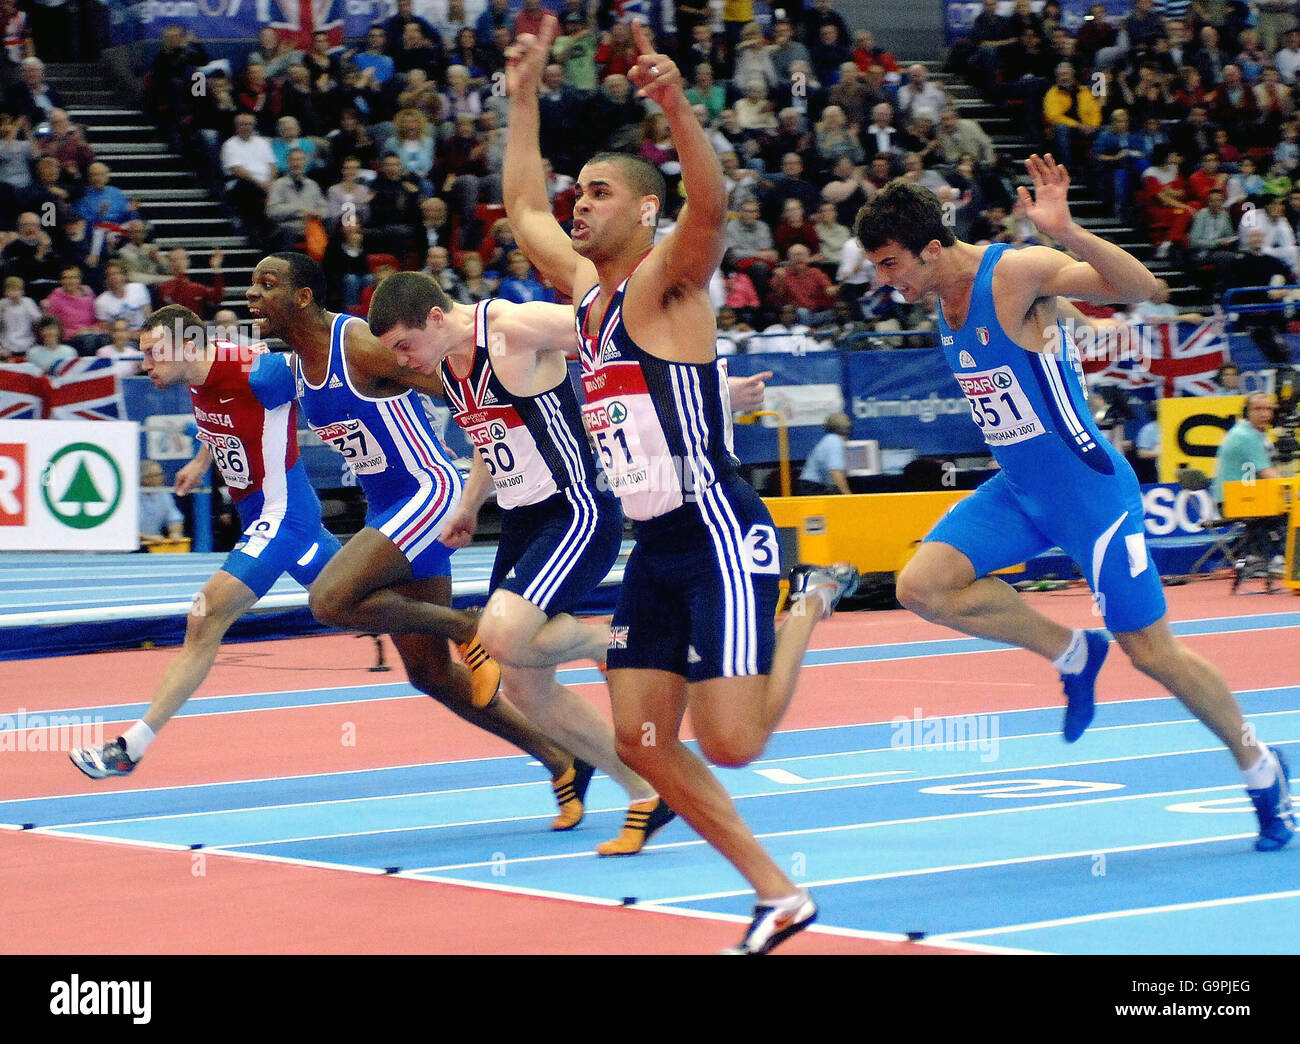 Jason Gardener, en Grande-Bretagne, remporte sa course de 60 m alors que Craig Pickering (troisième à partir de la droite) prend la deuxième place lors des championnats européens d'athlétisme en salle à la National Indoor Arena de Birmingham. Banque D'Images